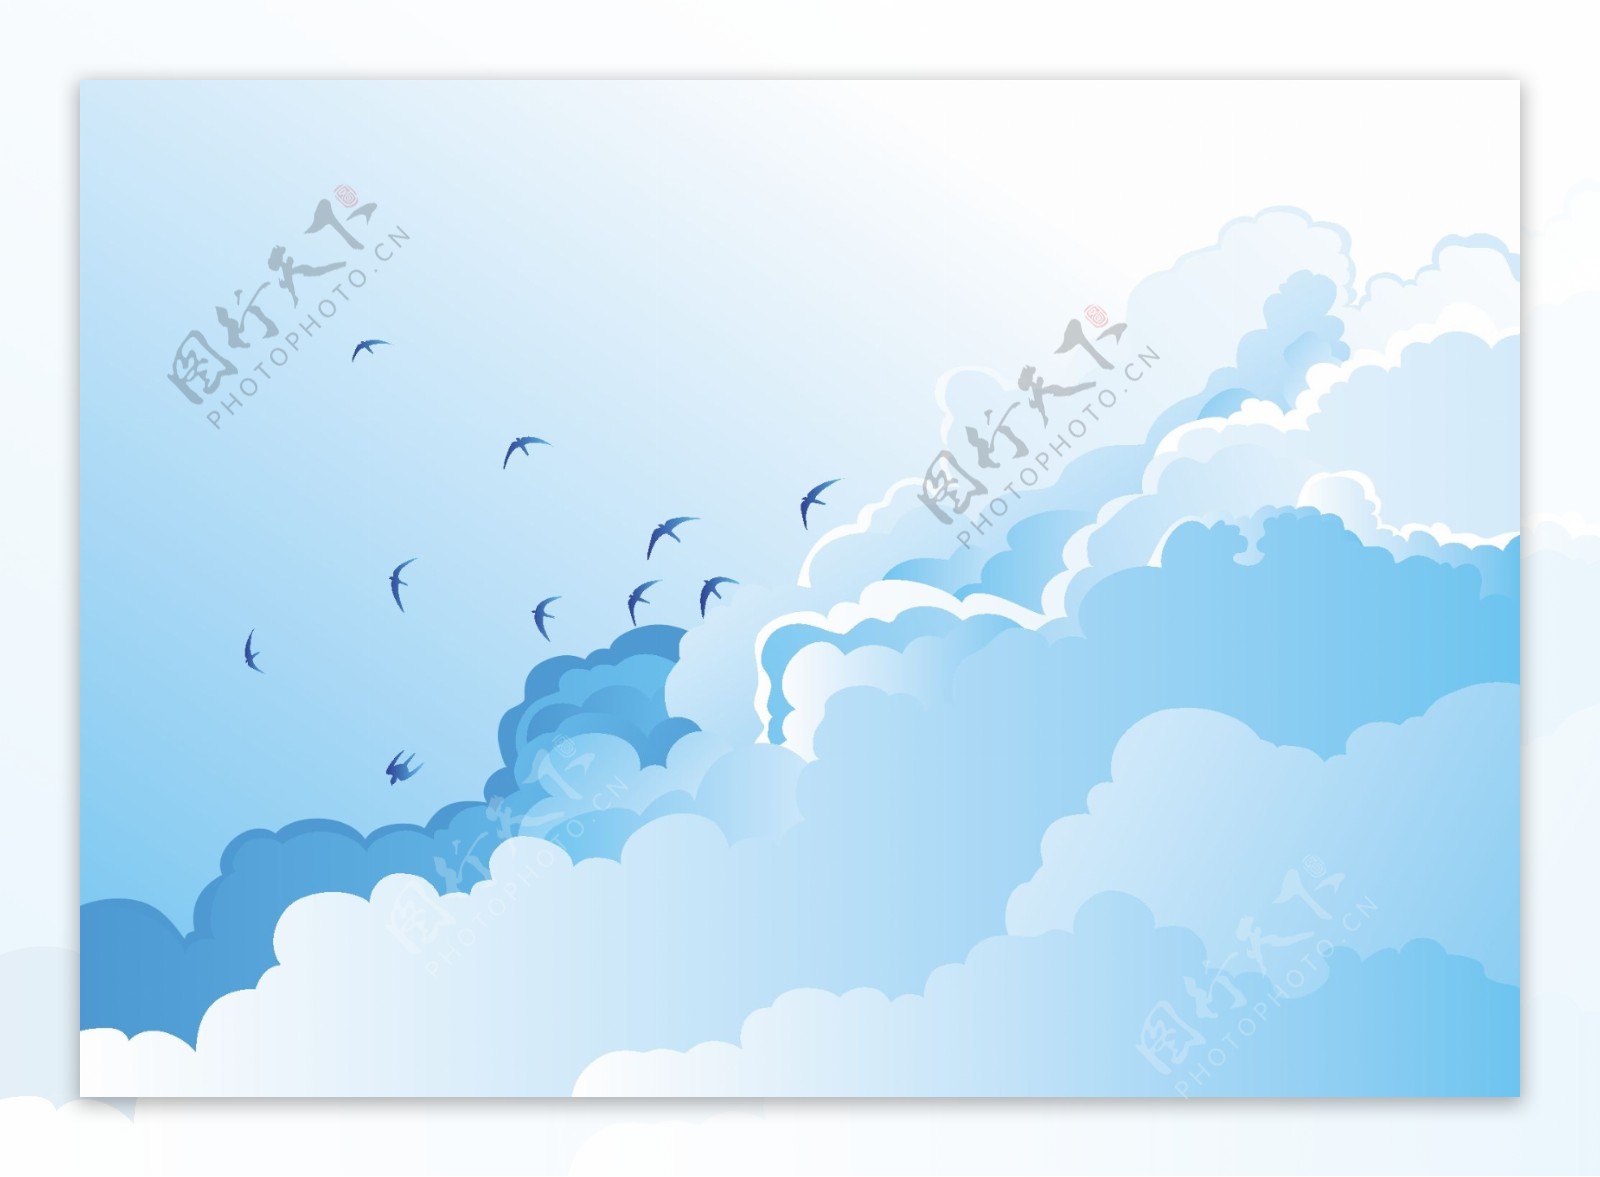 自由翱翔在蓝天白云上的飞鸟矢量素